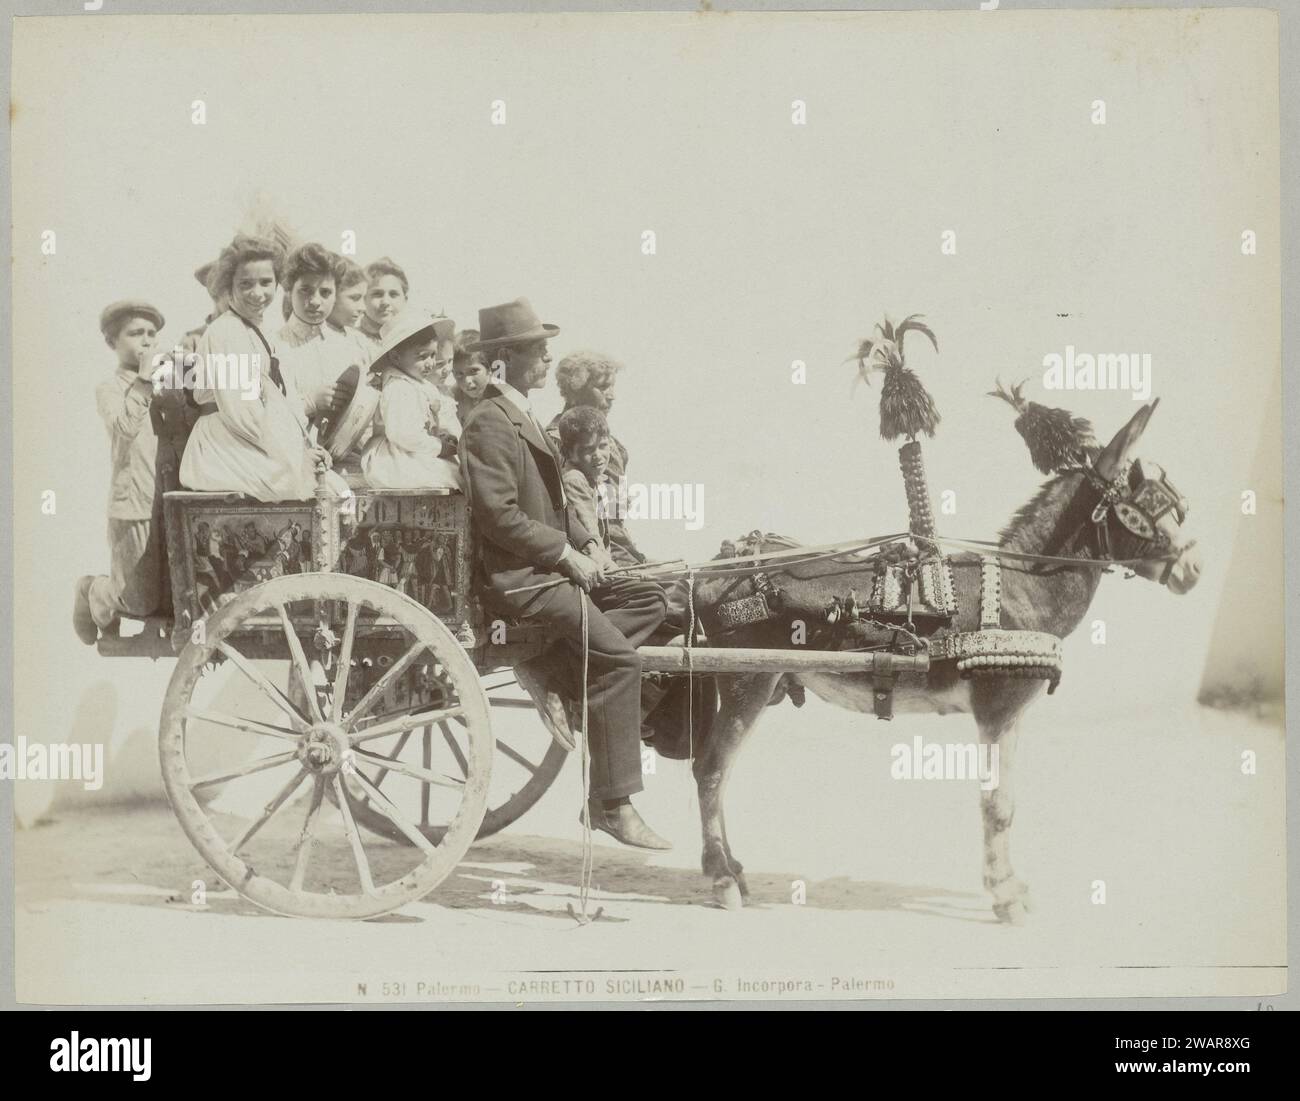 N 531 Palermo sizilianischer Wagen, ca. 1893 - ca. 1903 Foto Eines bearbeiteten und bemalten Eselkarren, beladen mit Menschen. PalermoNiederlande fotografische Unterstützung. Pappalbumendruck Palermo Stockfoto